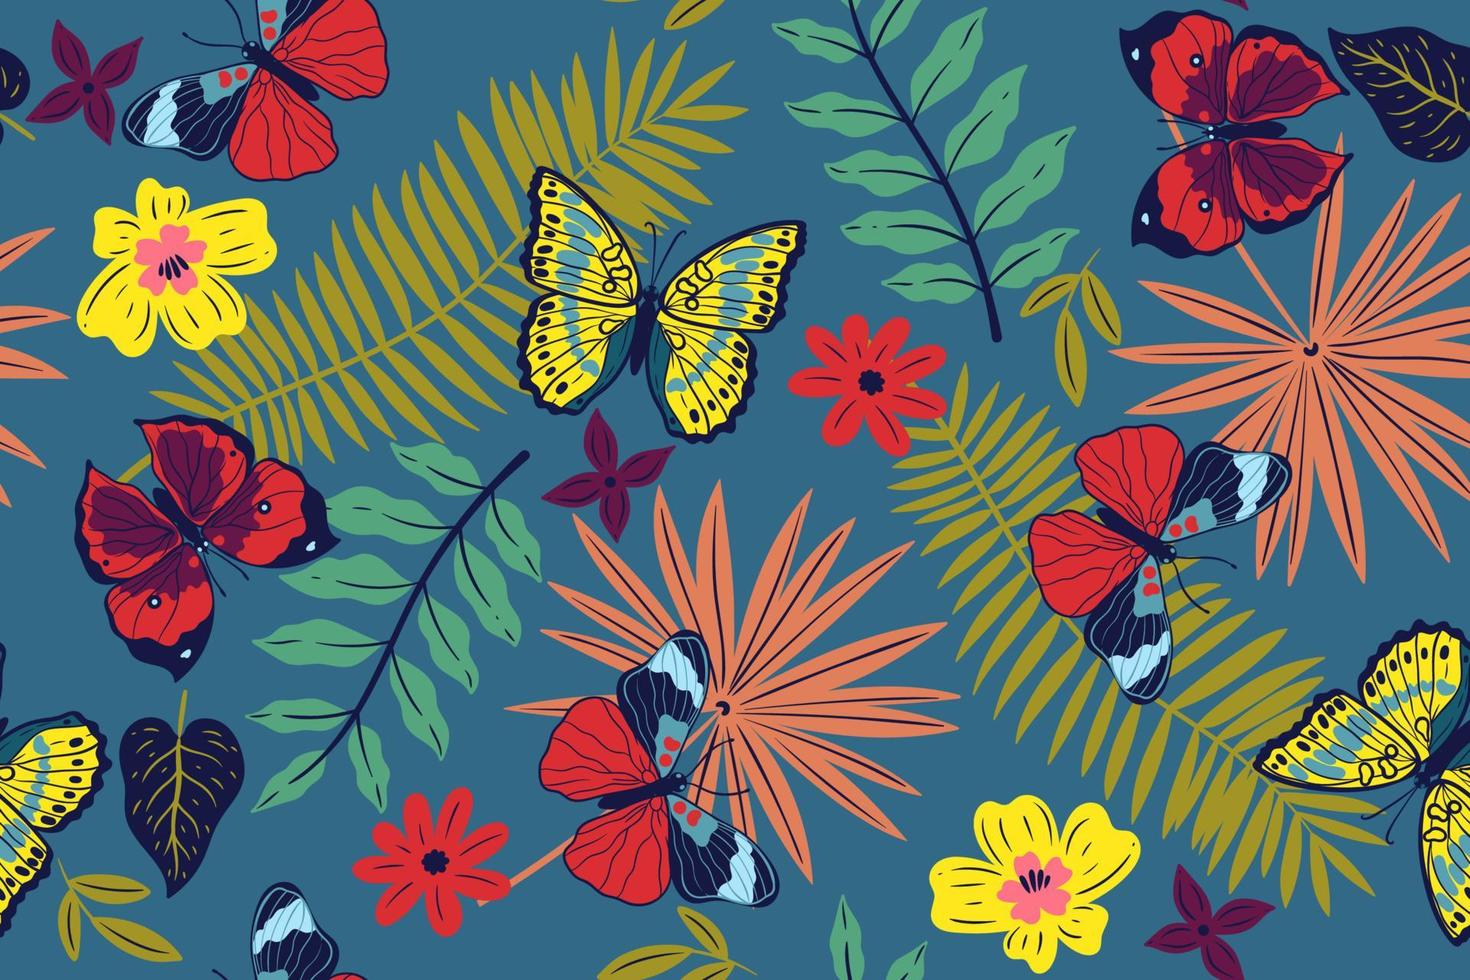 seamless mönster med fjärilar och blommor. vektorgrafik. vektor